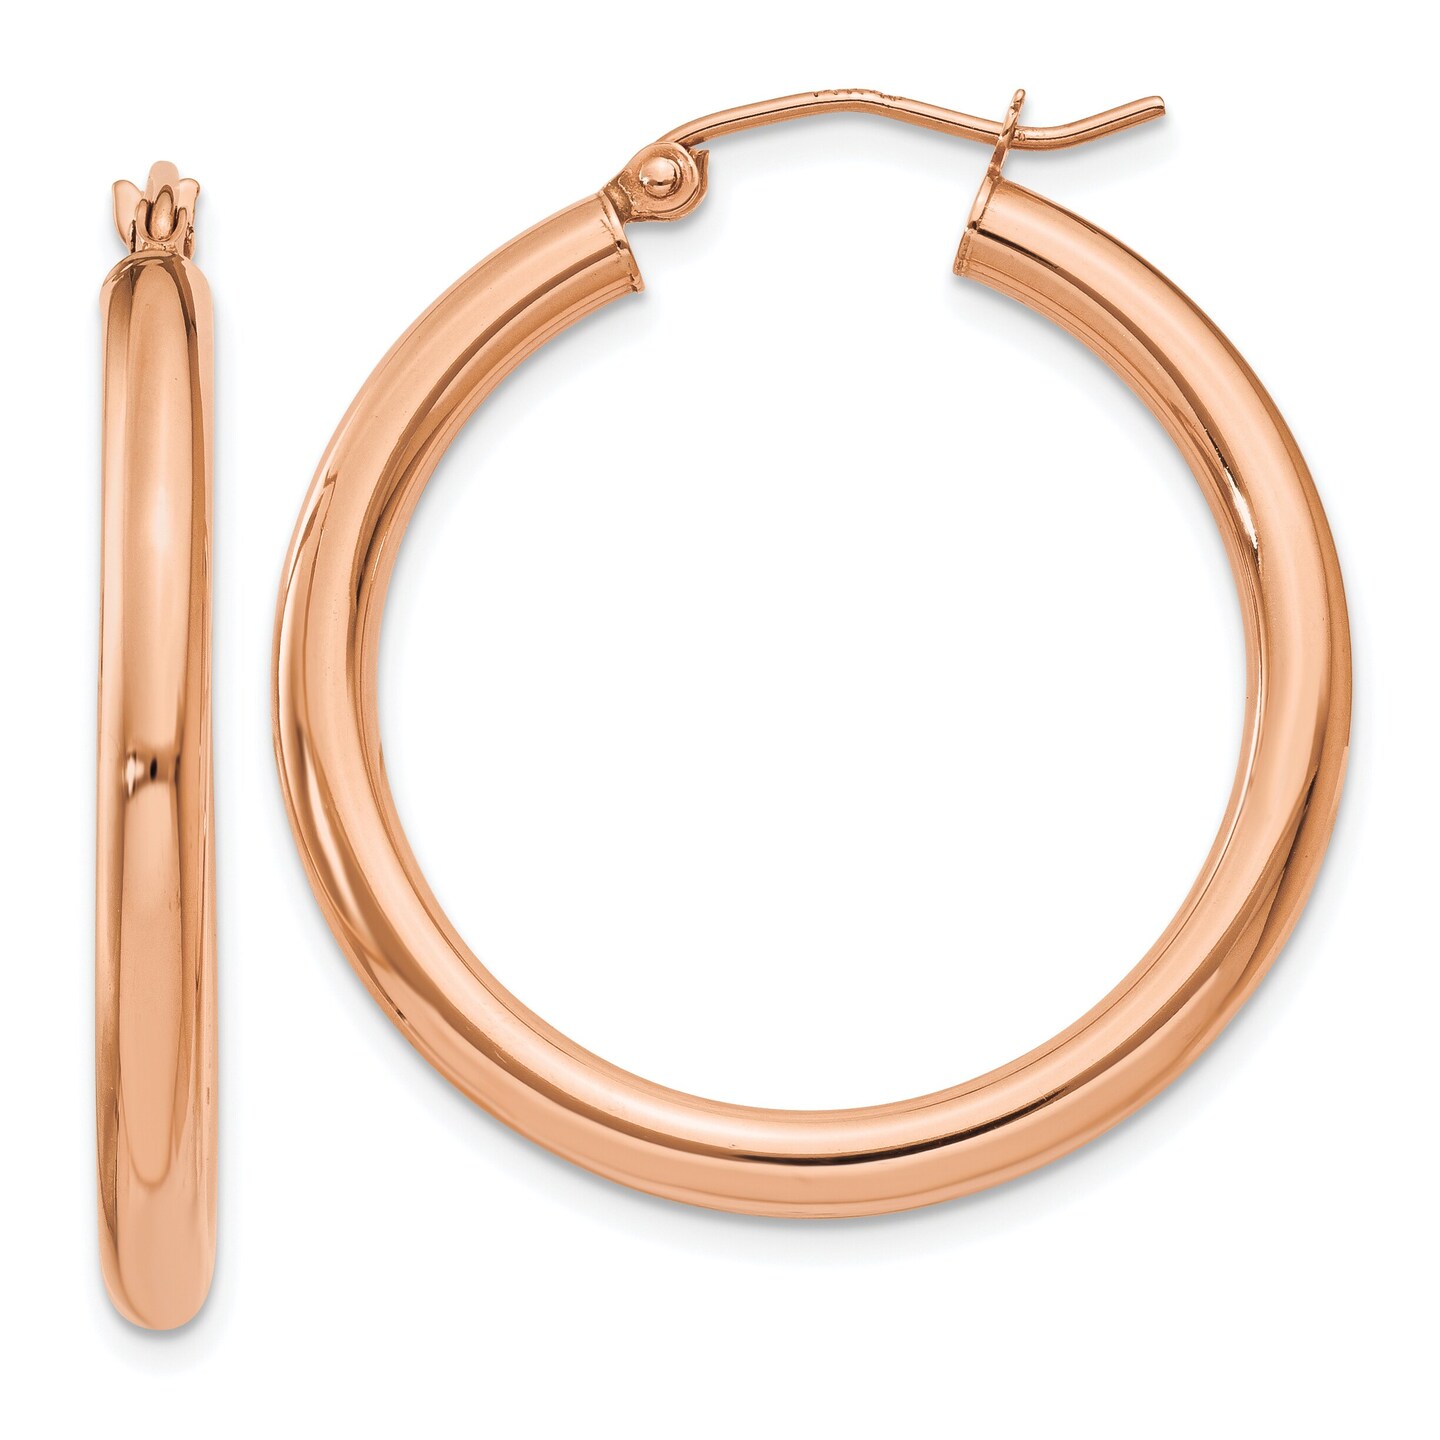 14K Rose Gold Hoop Earrings Polished Ear Jewelry 30mm x 28mm